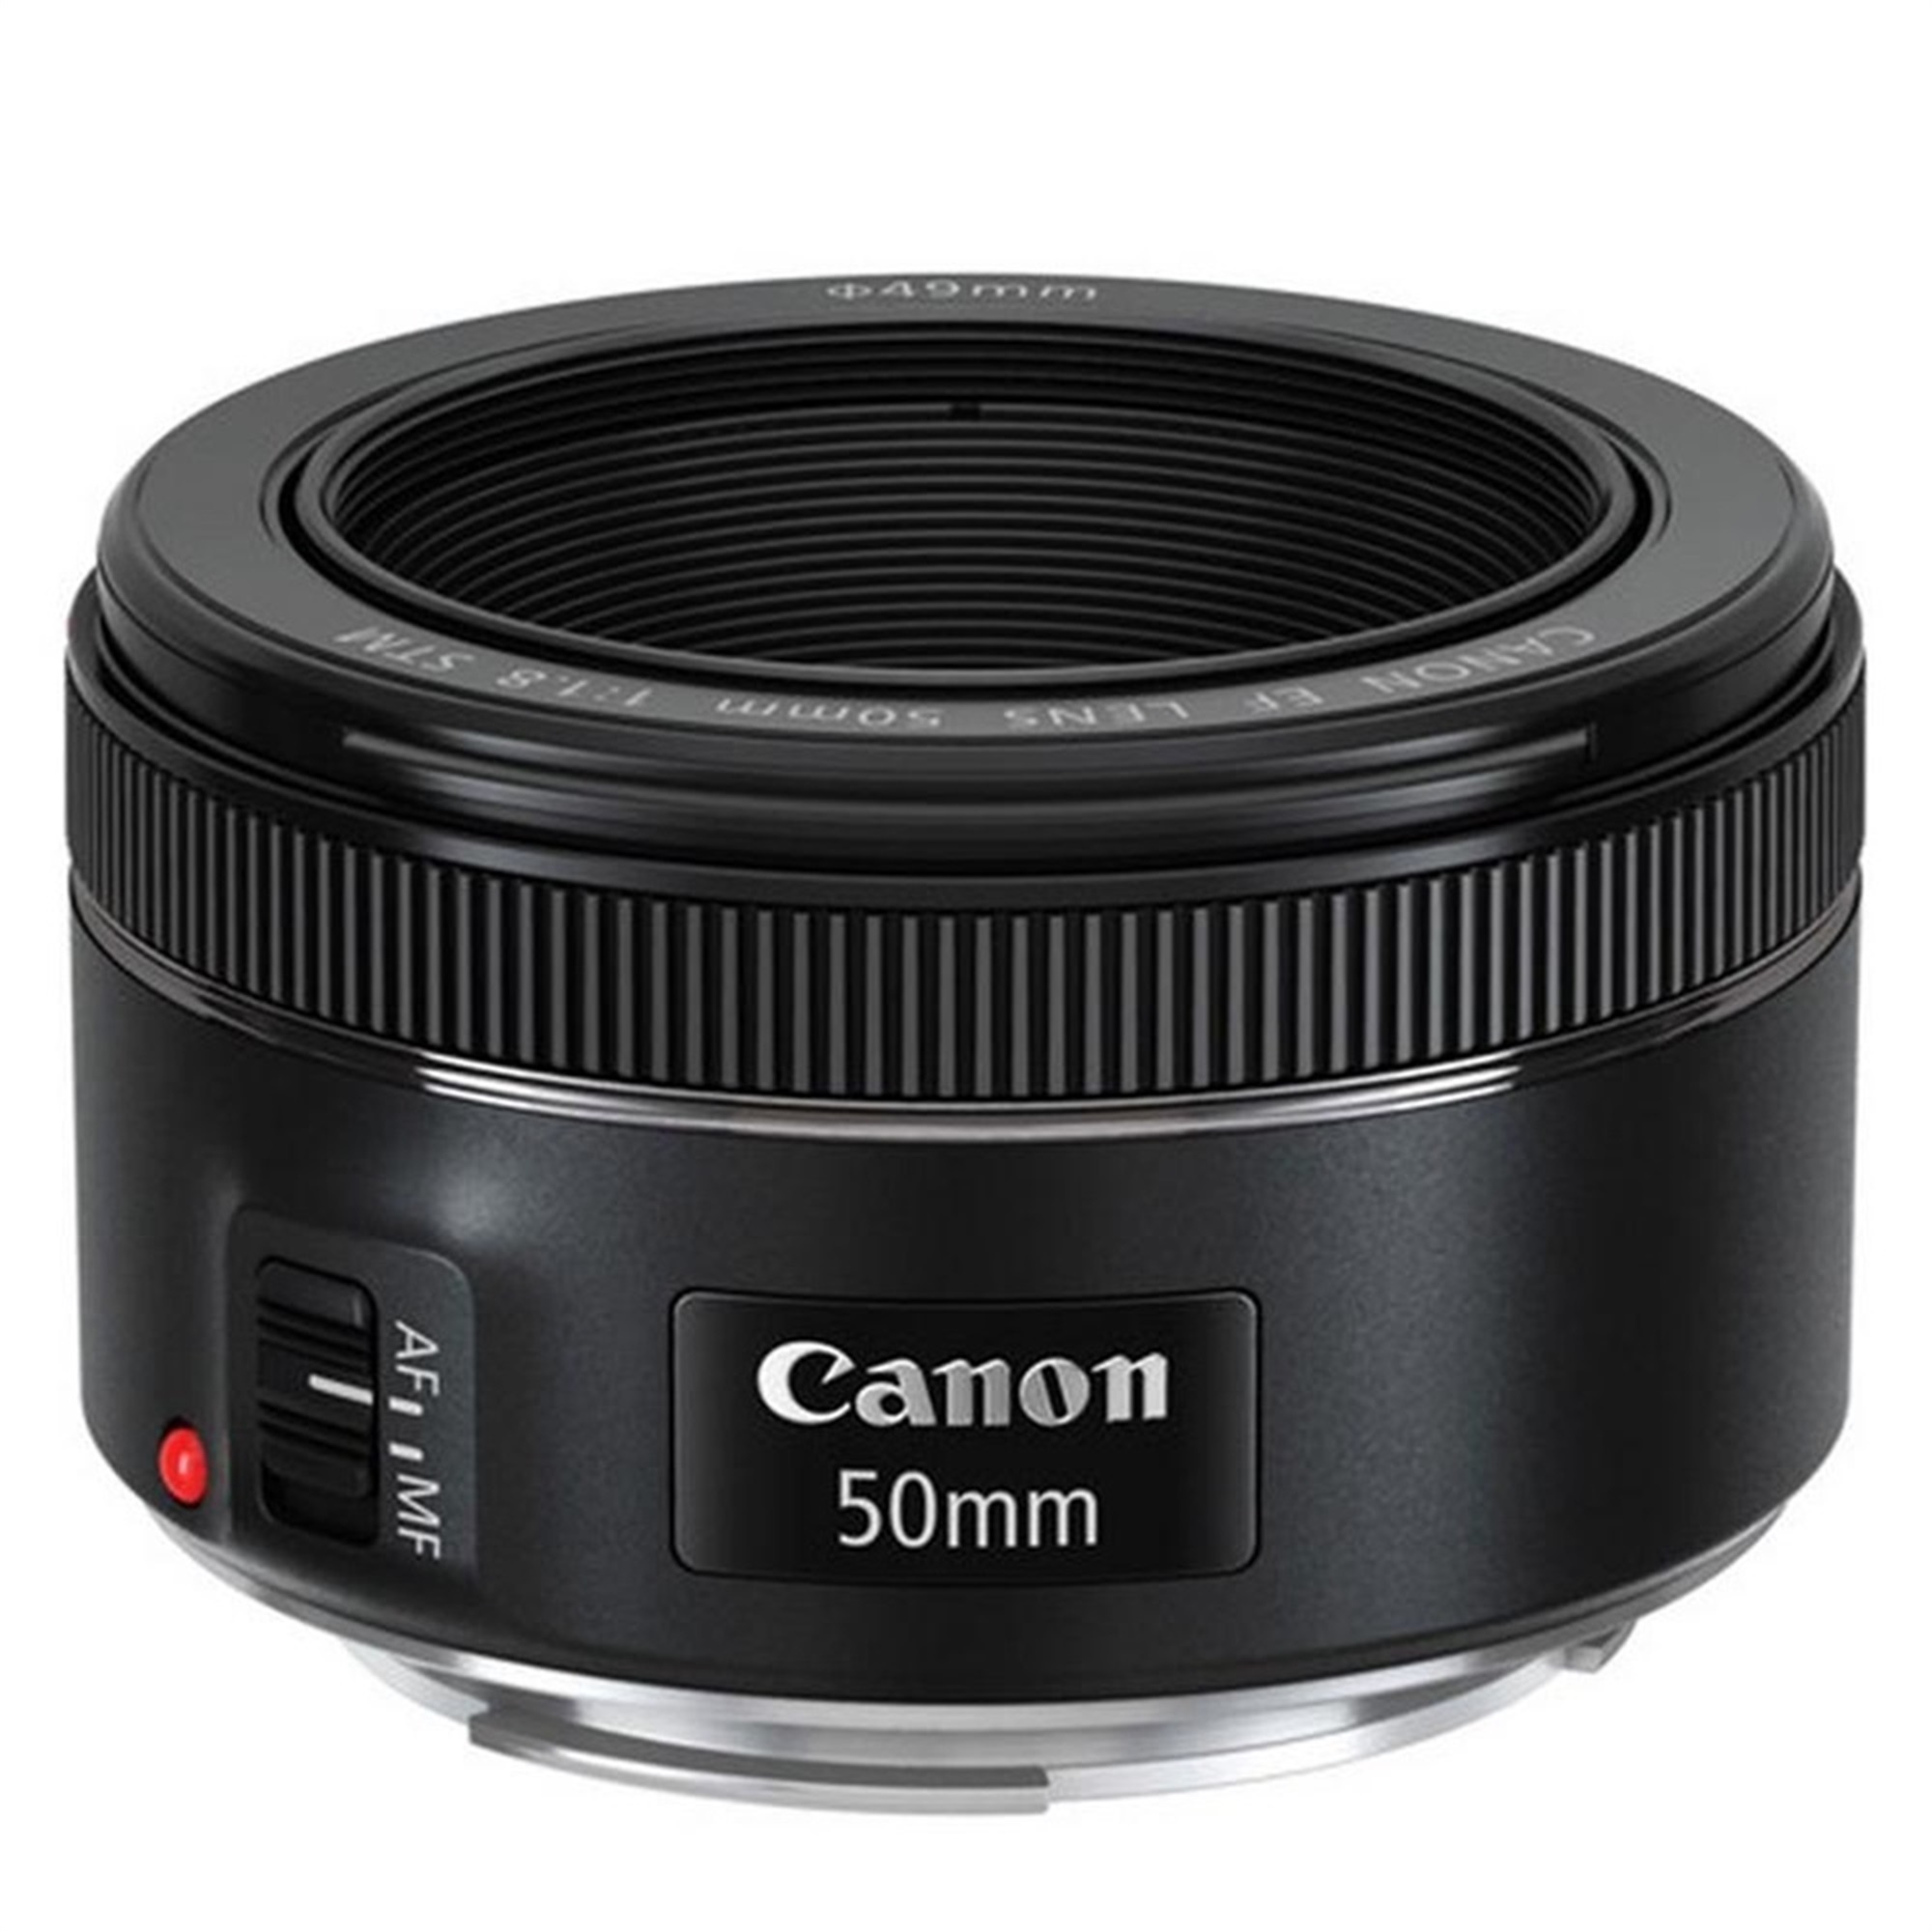 Canon EOS Rebel T7 24.1MP DSLR Camera + 18-55mm IS II + EF 50mm STM Lens - image 4 of 4